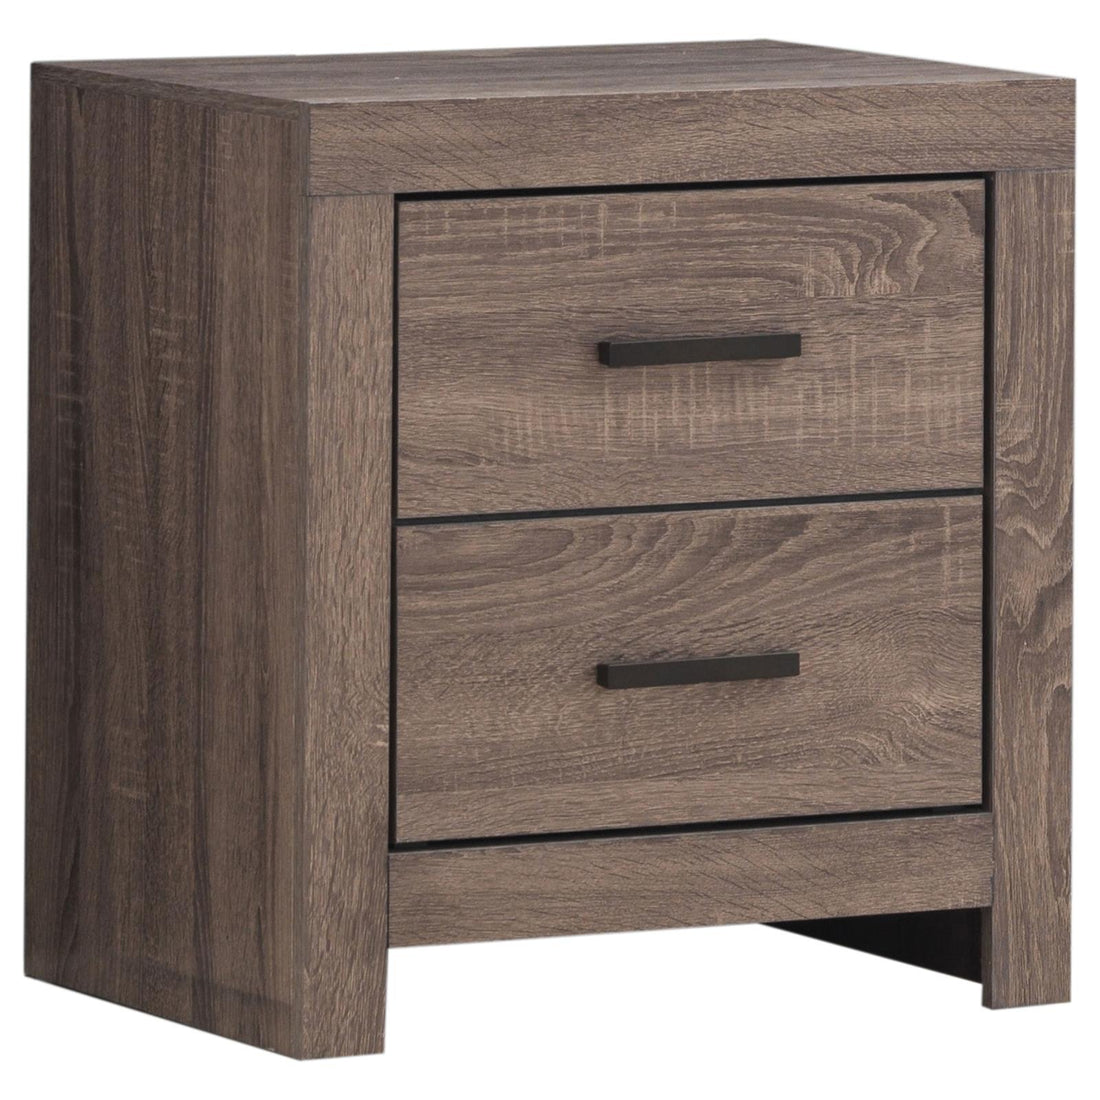 Brantford 2-Drawer Nightstand Barrel Oak - 207042 - Bien Home Furniture &amp; Electronics